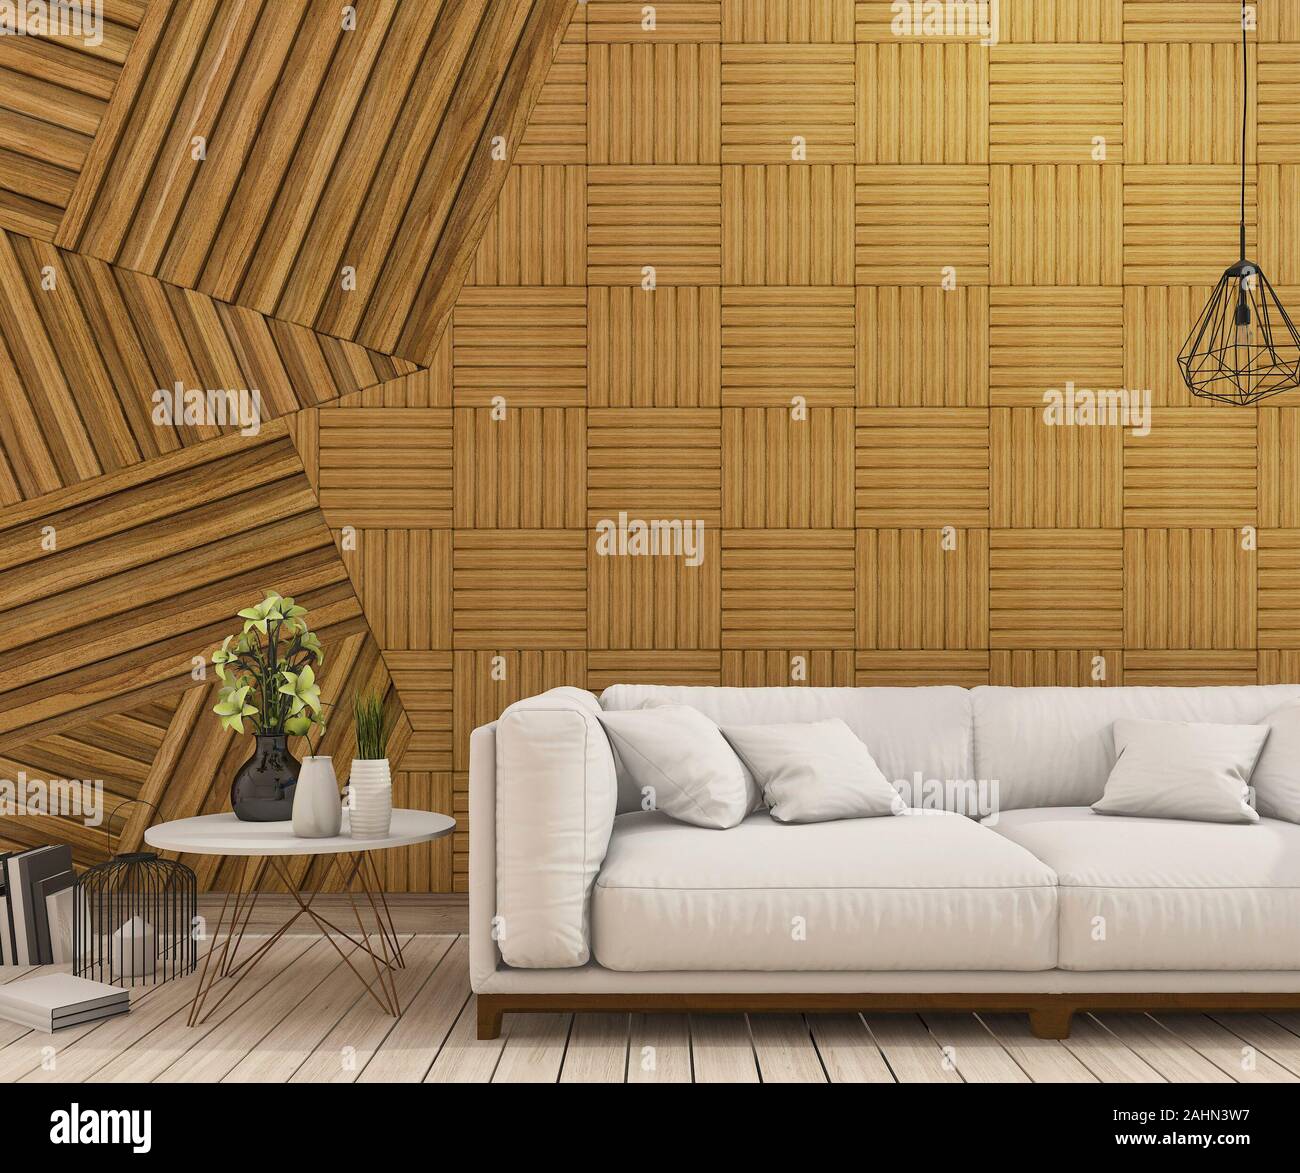 Giấy dán tường gỗ 3D sẽ đem đến cho ngôi nhà của bạn một phong cách mới lạ, khác biệt. Sự kết hợp giữa vẻ đẹp tự nhiên và sự độc đáo của hình ảnh 3D sẽ làm bạn bất ngờ. Bức ảnh này cho thấy rõ cách mà những mảnh ván gỗ được sắp xếp một cách tinh tế, tạo nên một bức tường độc đáo và nổi bật. Hãy khám phá và cùng tận hưởng nó! Translation: 3D wood wallpaper will bring a unique and different style to your home. The combination of natural beauty and the uniqueness of 3D images will surprise you. This image shows clearly how the wooden planks are arranged in a delicate way, creating a unique and prominent wall. Let\'s explore and enjoy it together!